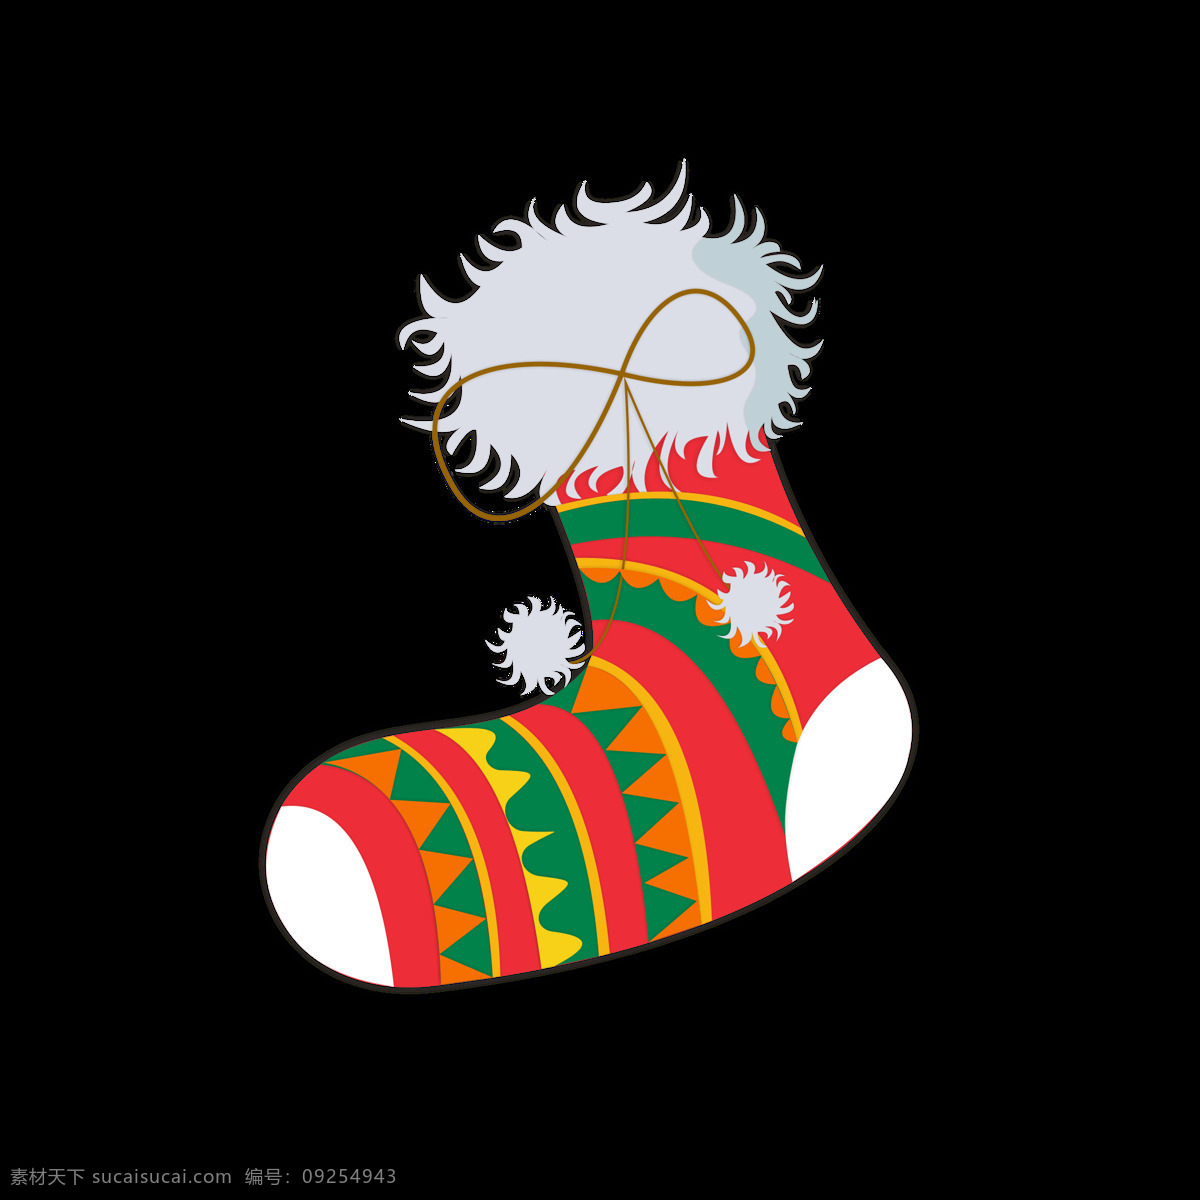 圣诞节 元素 卡通 可爱 袜子 节日 冬天